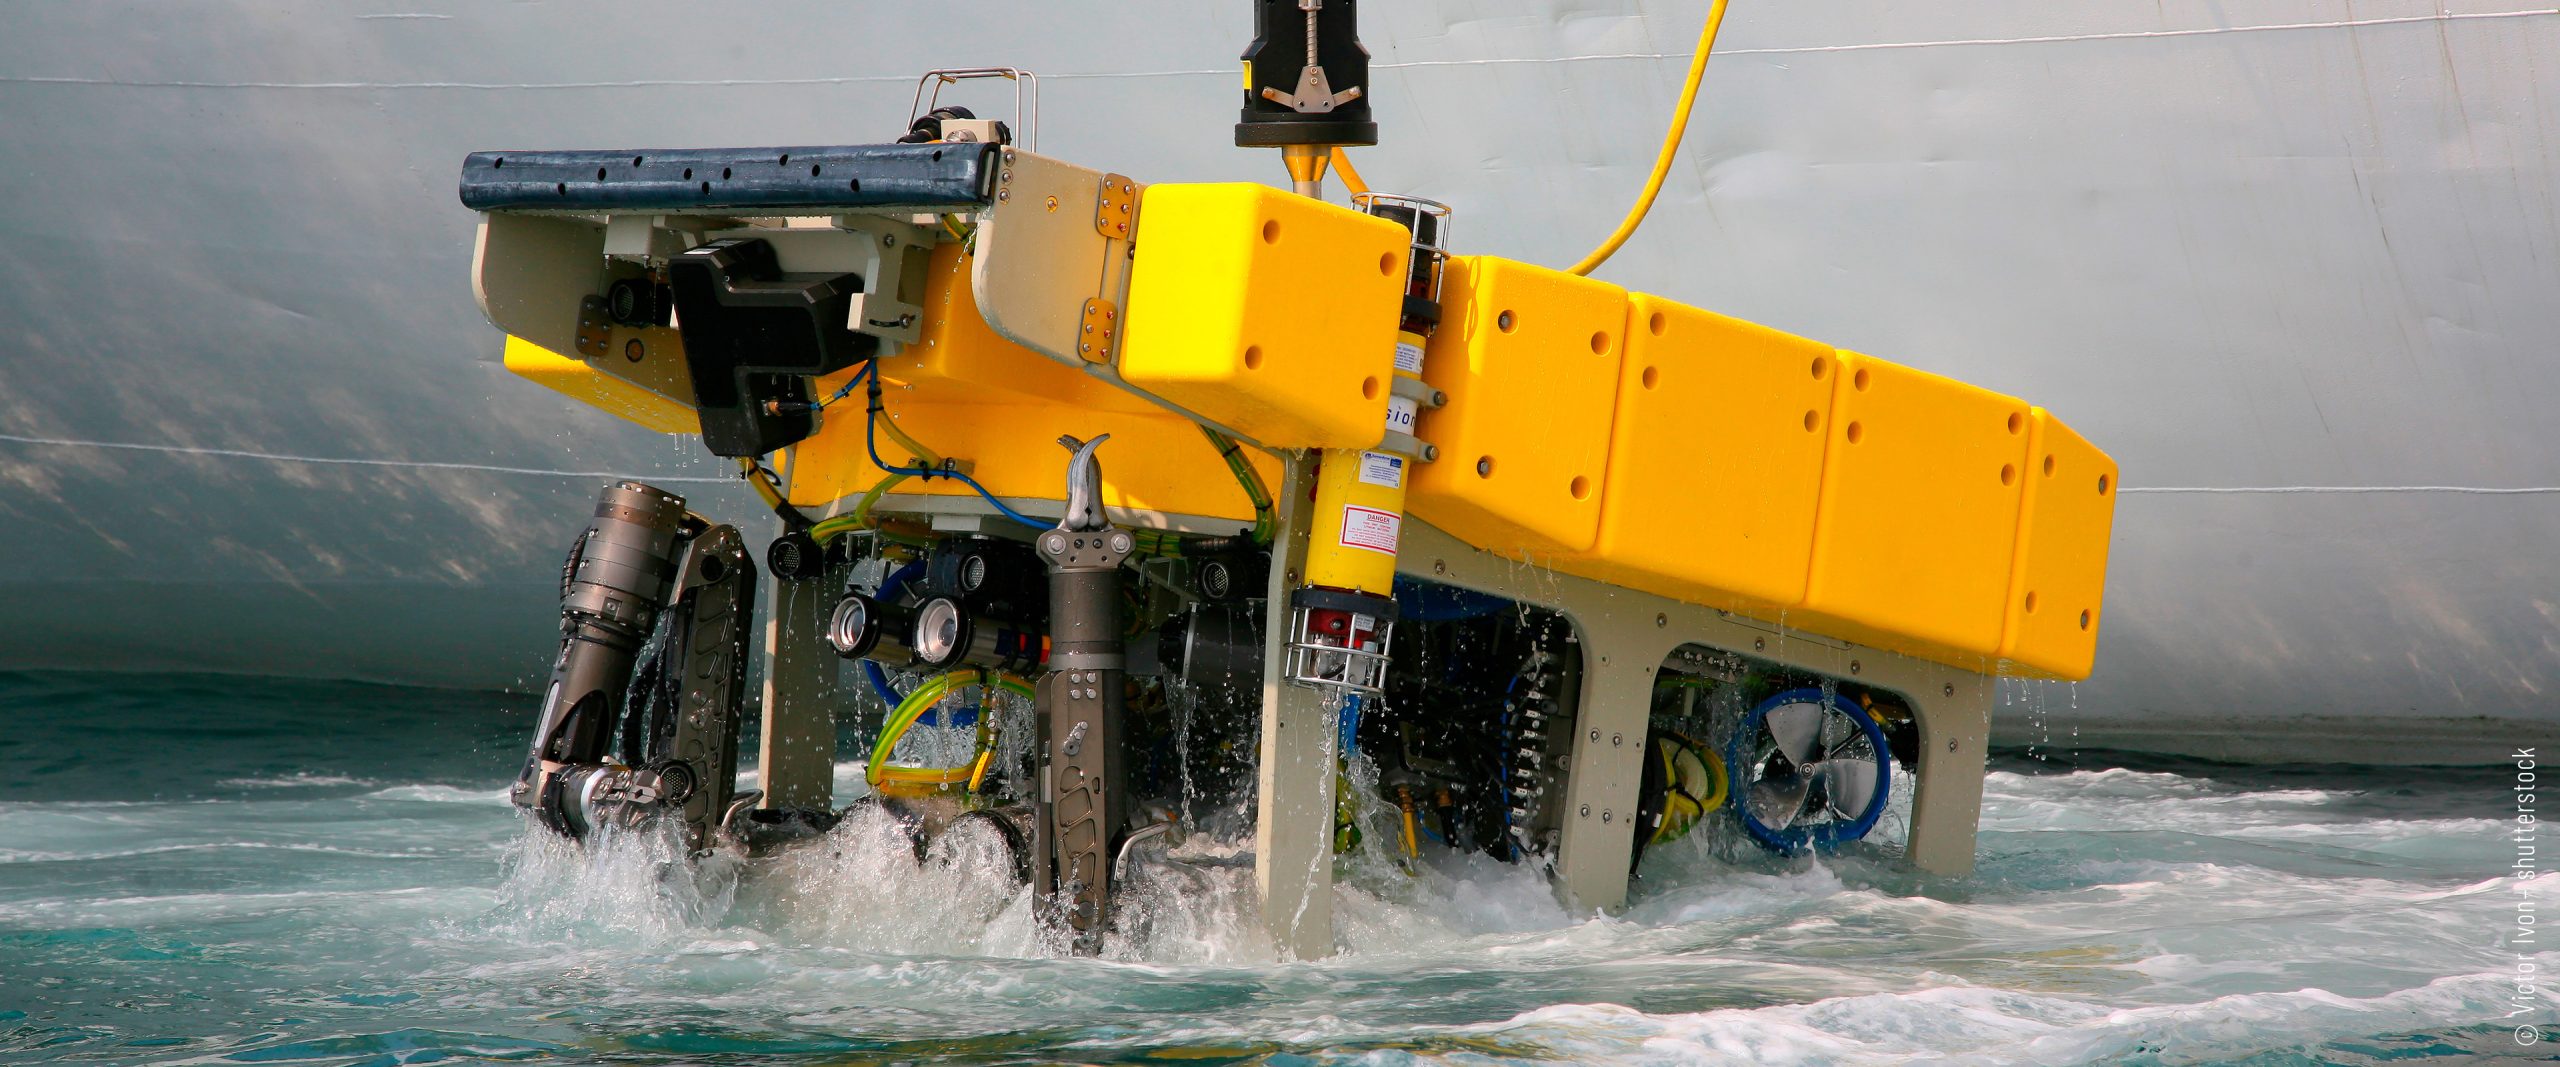 Offshore-Testzentrum Meerestechnik